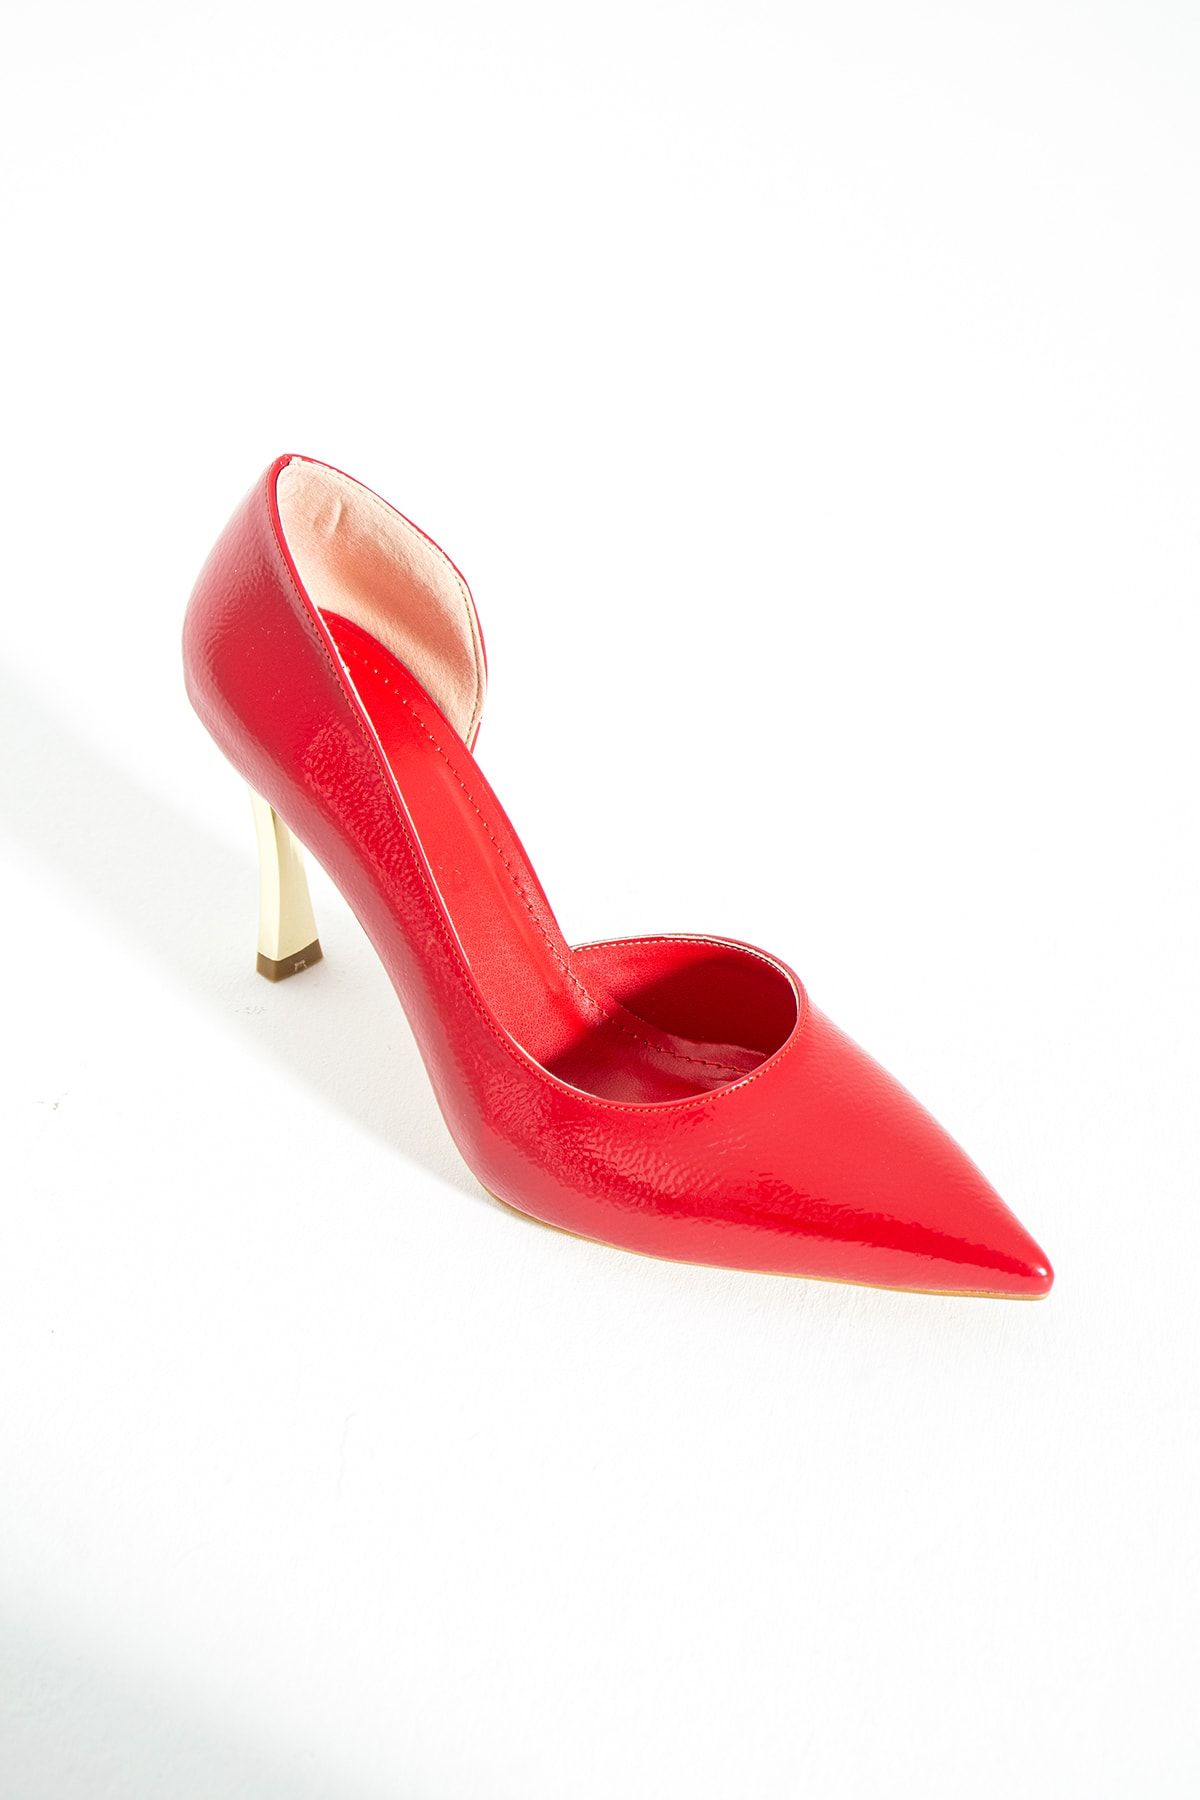 Güllü Shoes Kırmızı Stiletto, Kırmızı Topuklu Ayakkabı, Ince Topuklu Ayakkabı, Kadın Ayakkabısı